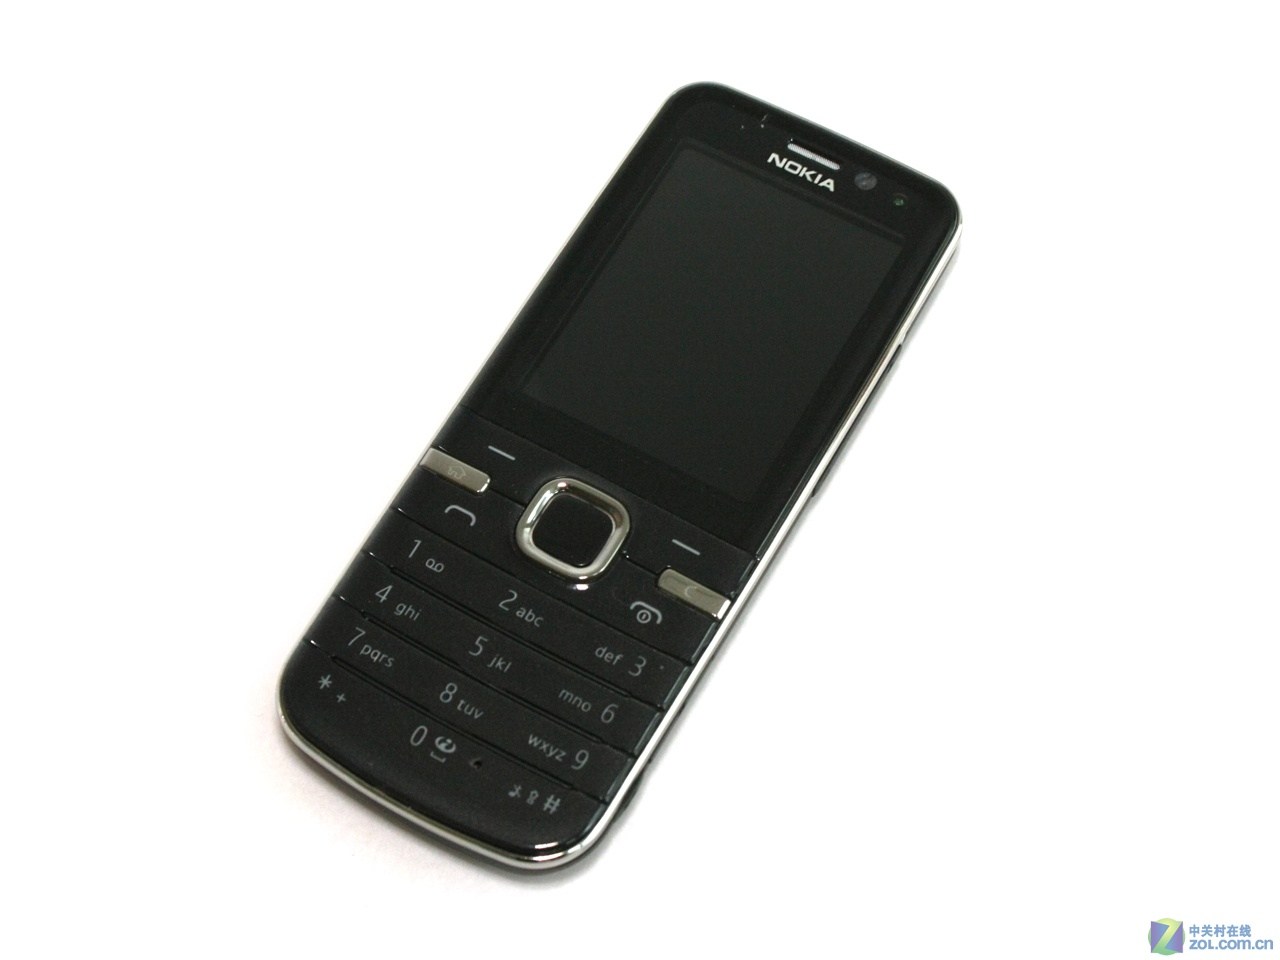 諾基亞6730c(諾基亞6730c手機)